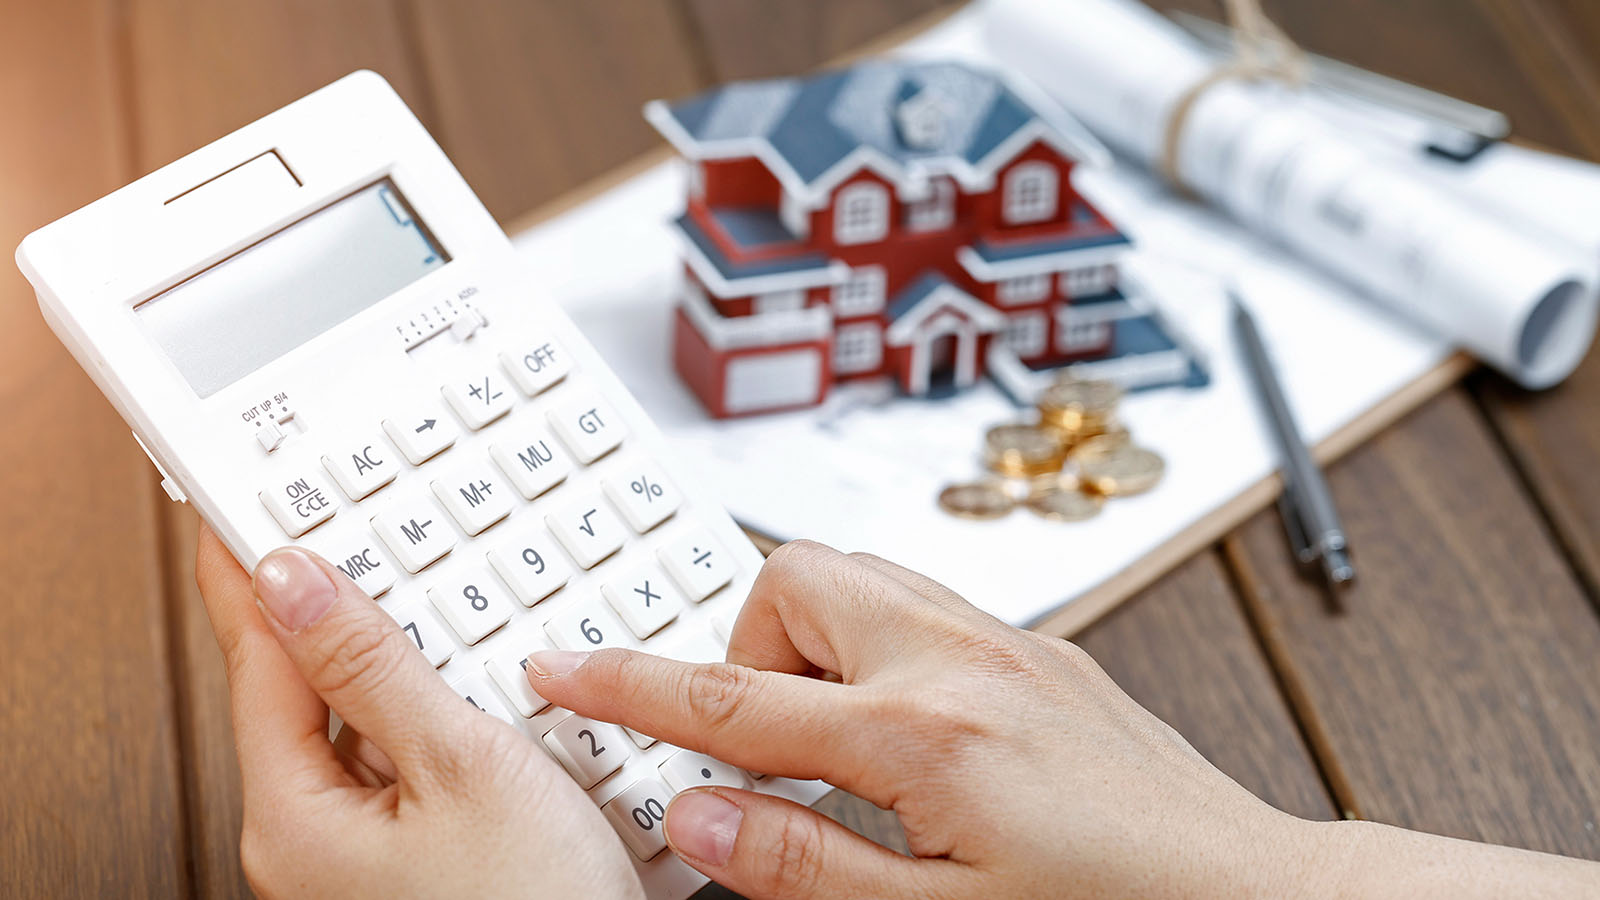 imagem com uma calculadora, uma casa em miniatura e outros papeis, representando o seguro fiança locatícia